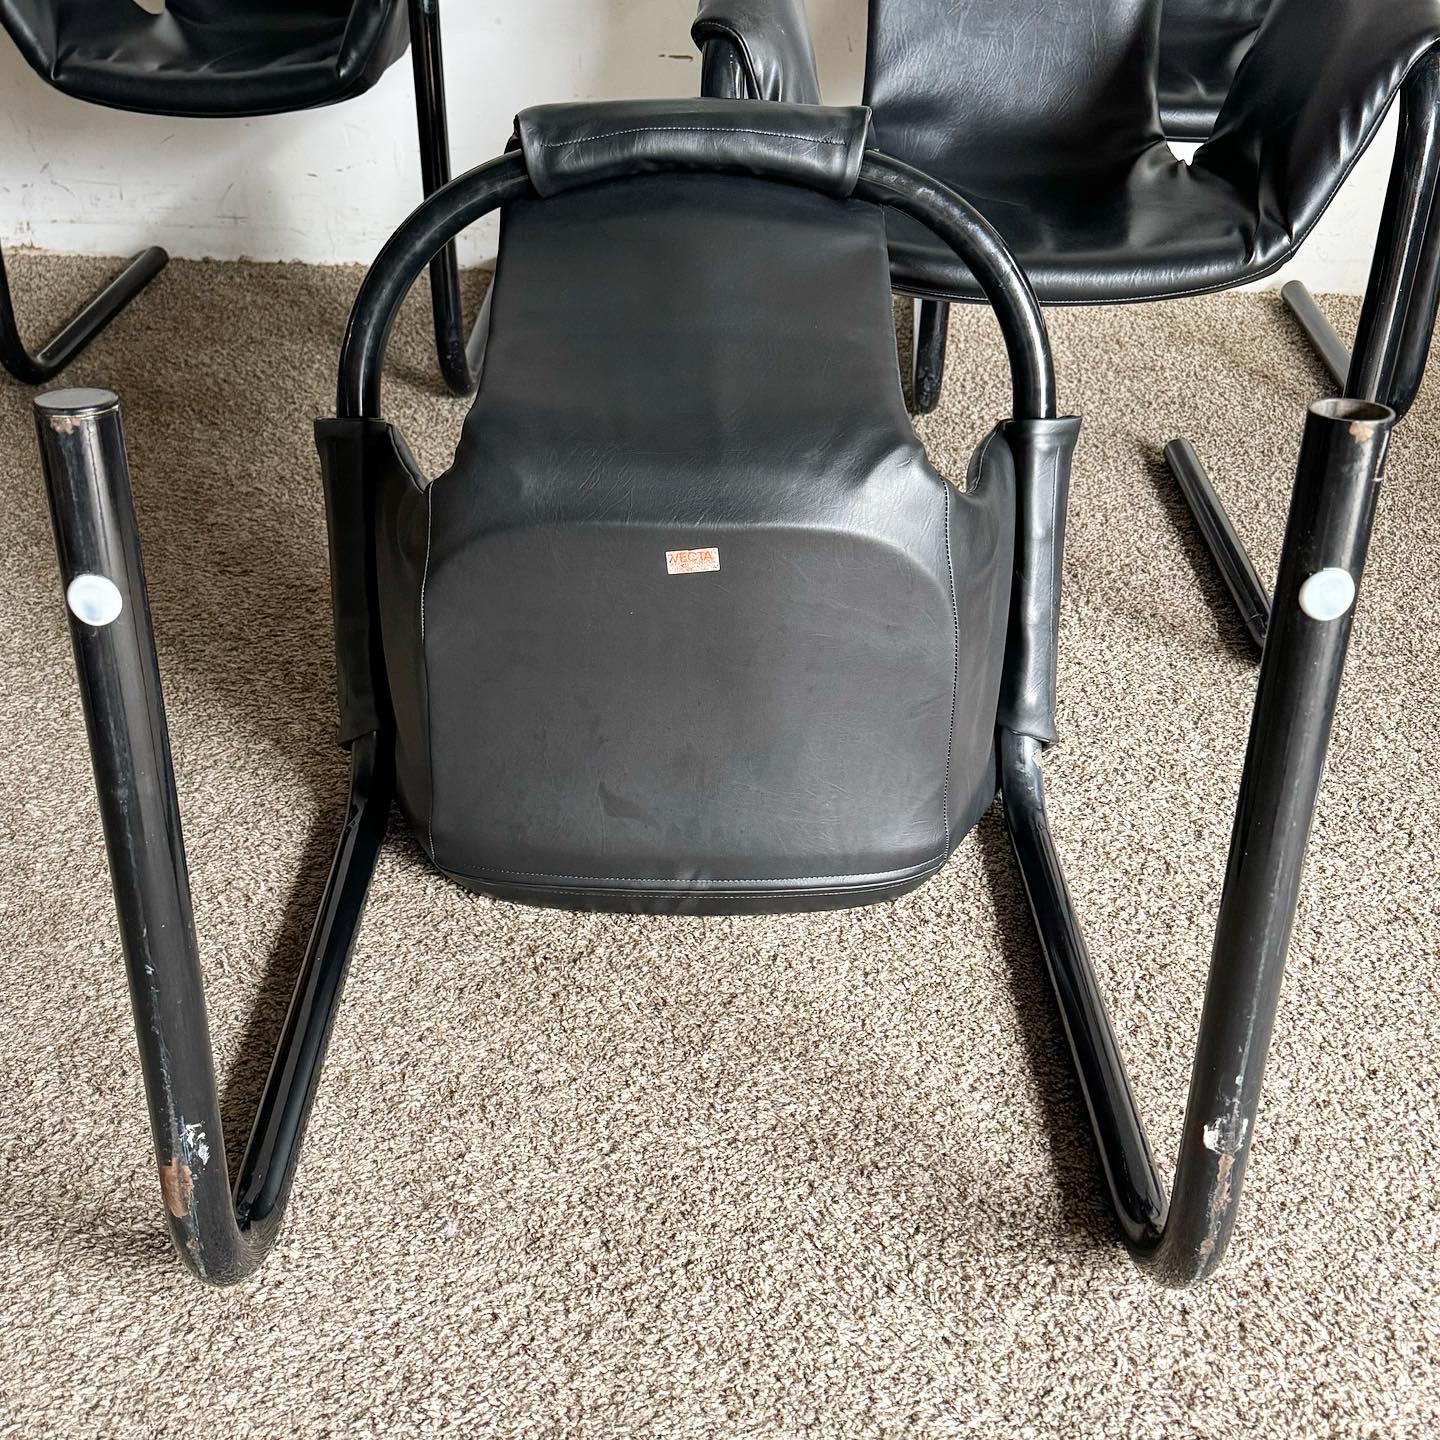 Adoptez le style rétro des années 1970 avec les chaises à piètement tubulaire Zermatt en vinyle noir et métal noir de Vecta. Ces chaises emblématiques présentent un design minimaliste avec une sangle en vinyle noir et un cadre en métal tubulaire,